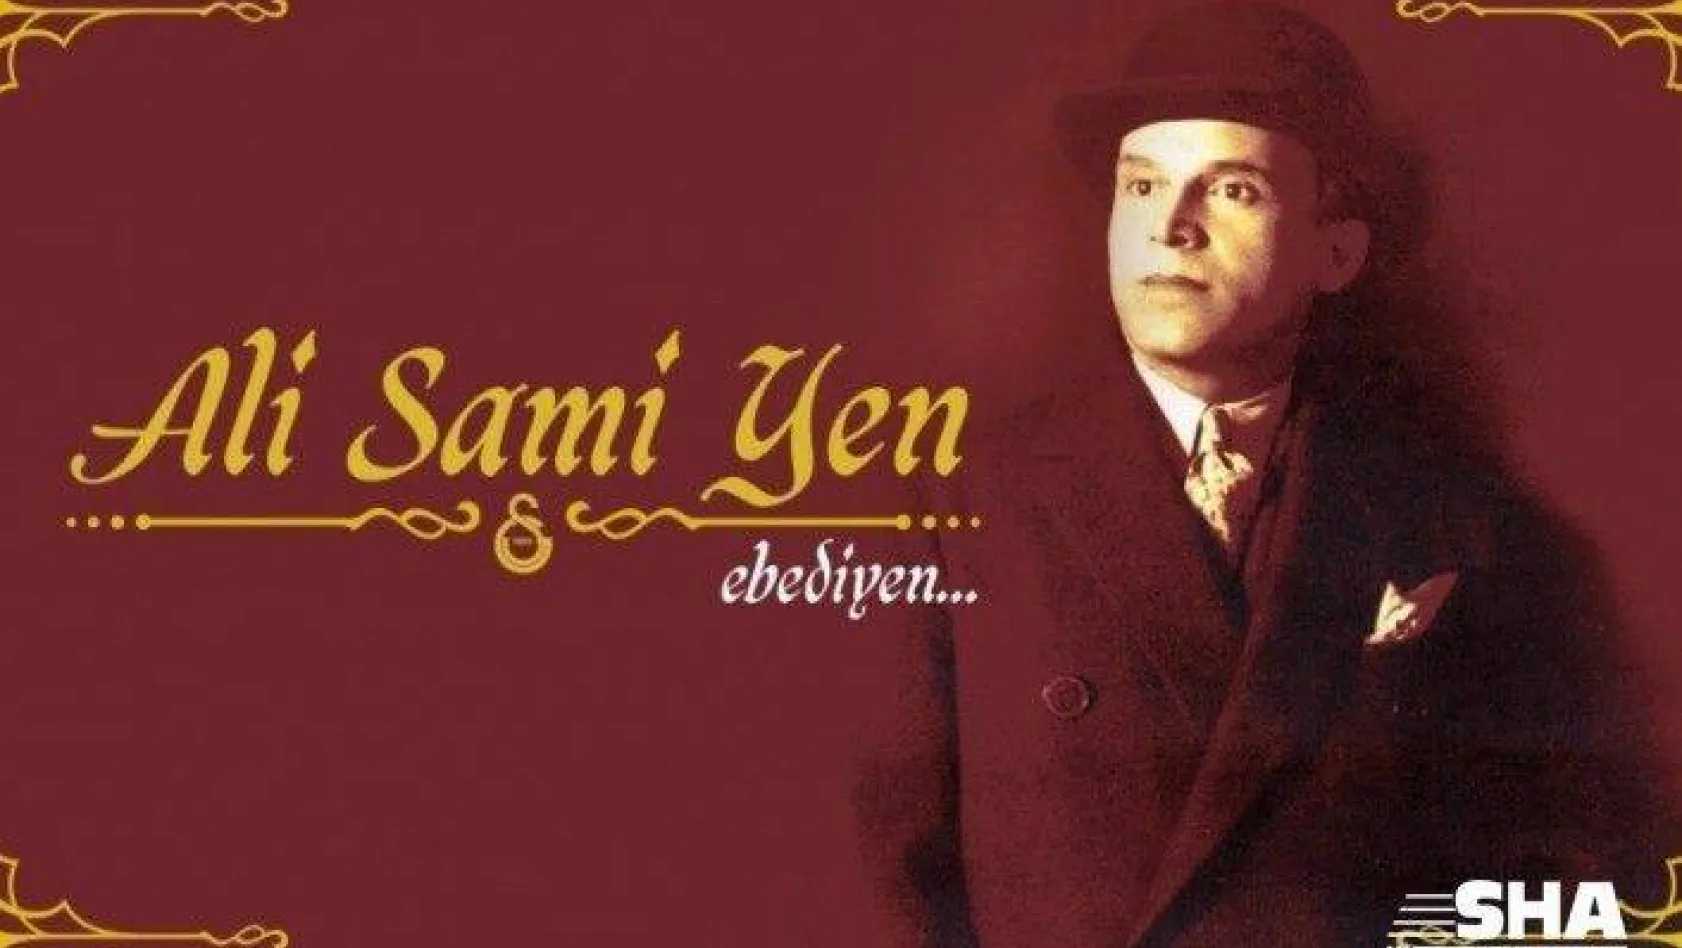 Galatasaray, Ali Sami Yen'in doğum gününü kutladı